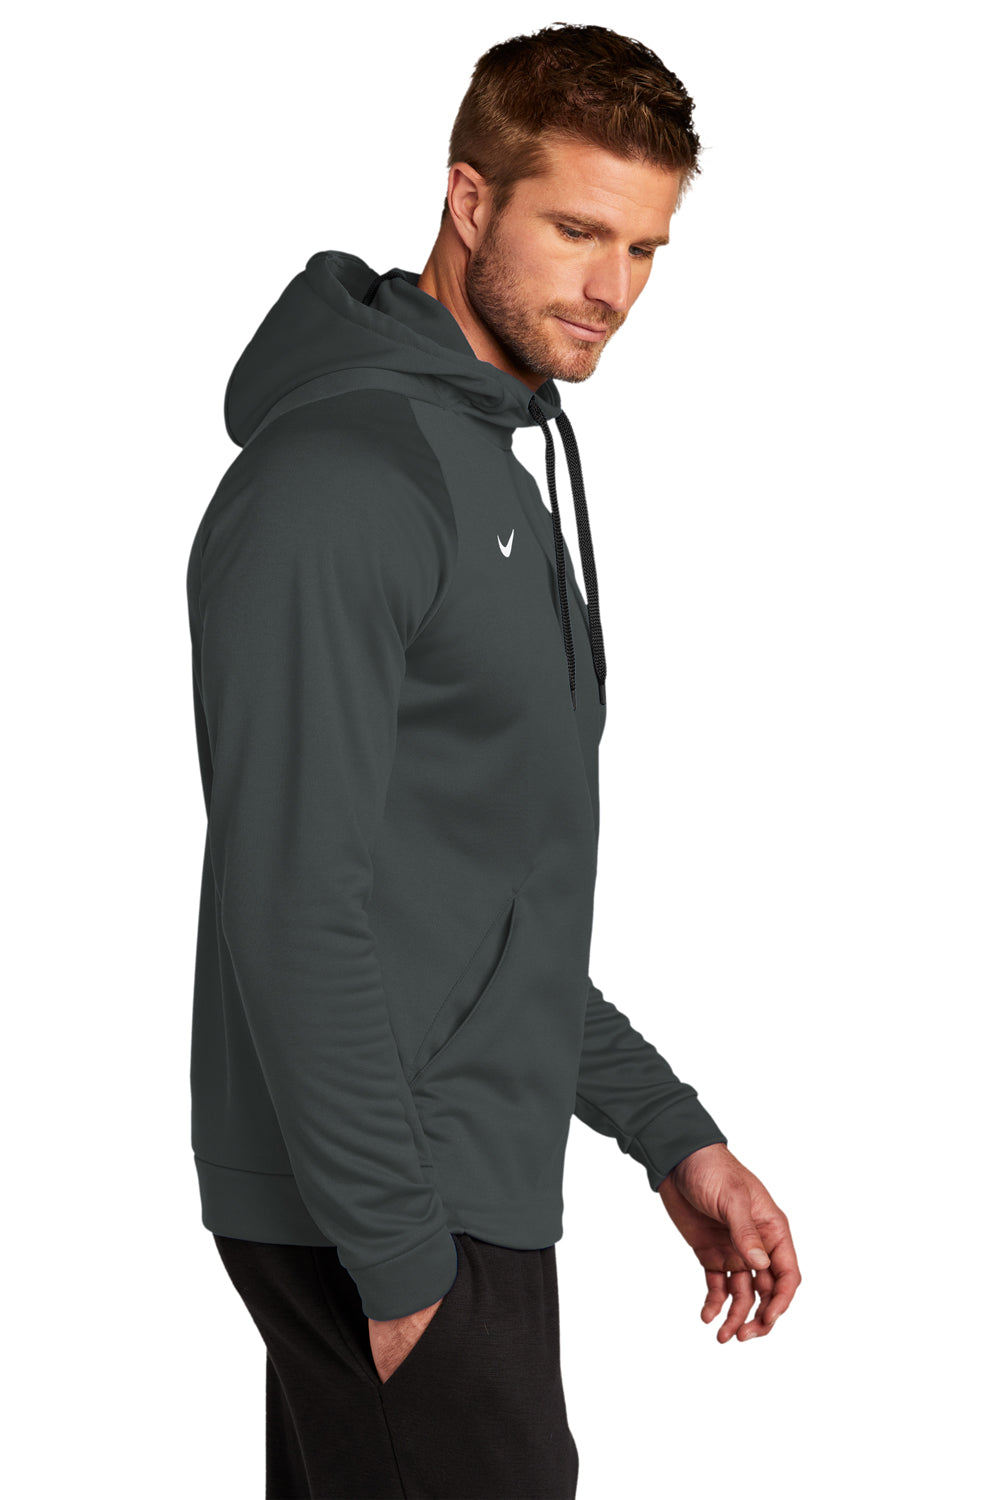 Nike CN9473 Mens Therma-Fit Moisture Wicking Fleece Hooded Sweatshirt Hoodie Team Anthracite Grey Model Side